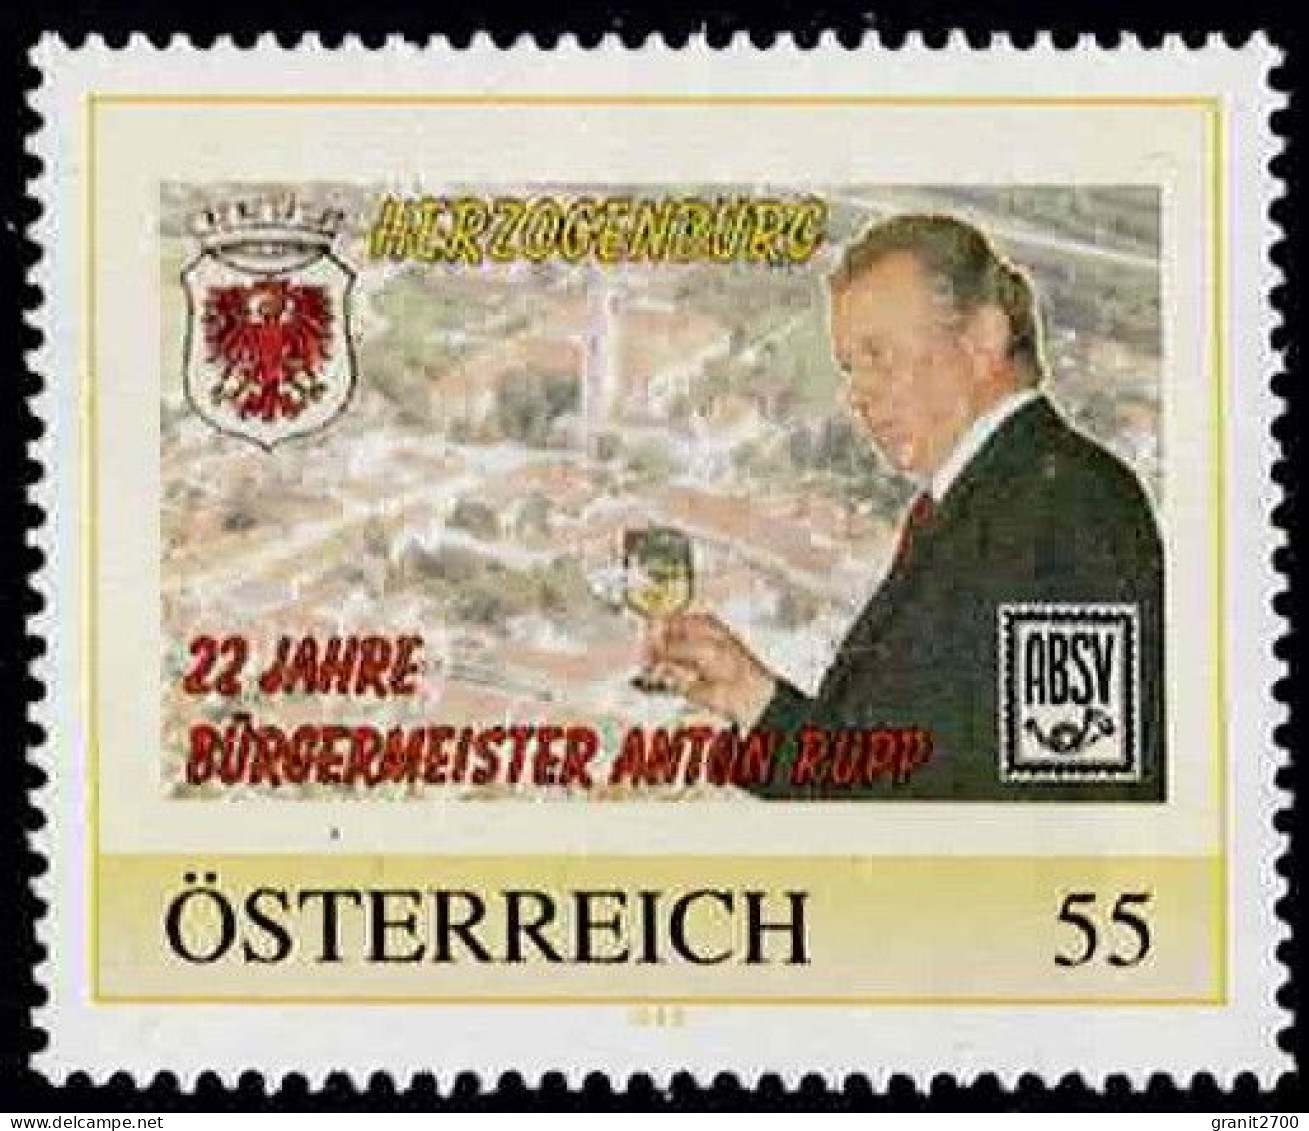 PM  Herzogenburg - 22 Jahre Bürgermeister Ex Bogen Nr. 8015225  Postfrisch - Persoonlijke Postzegels